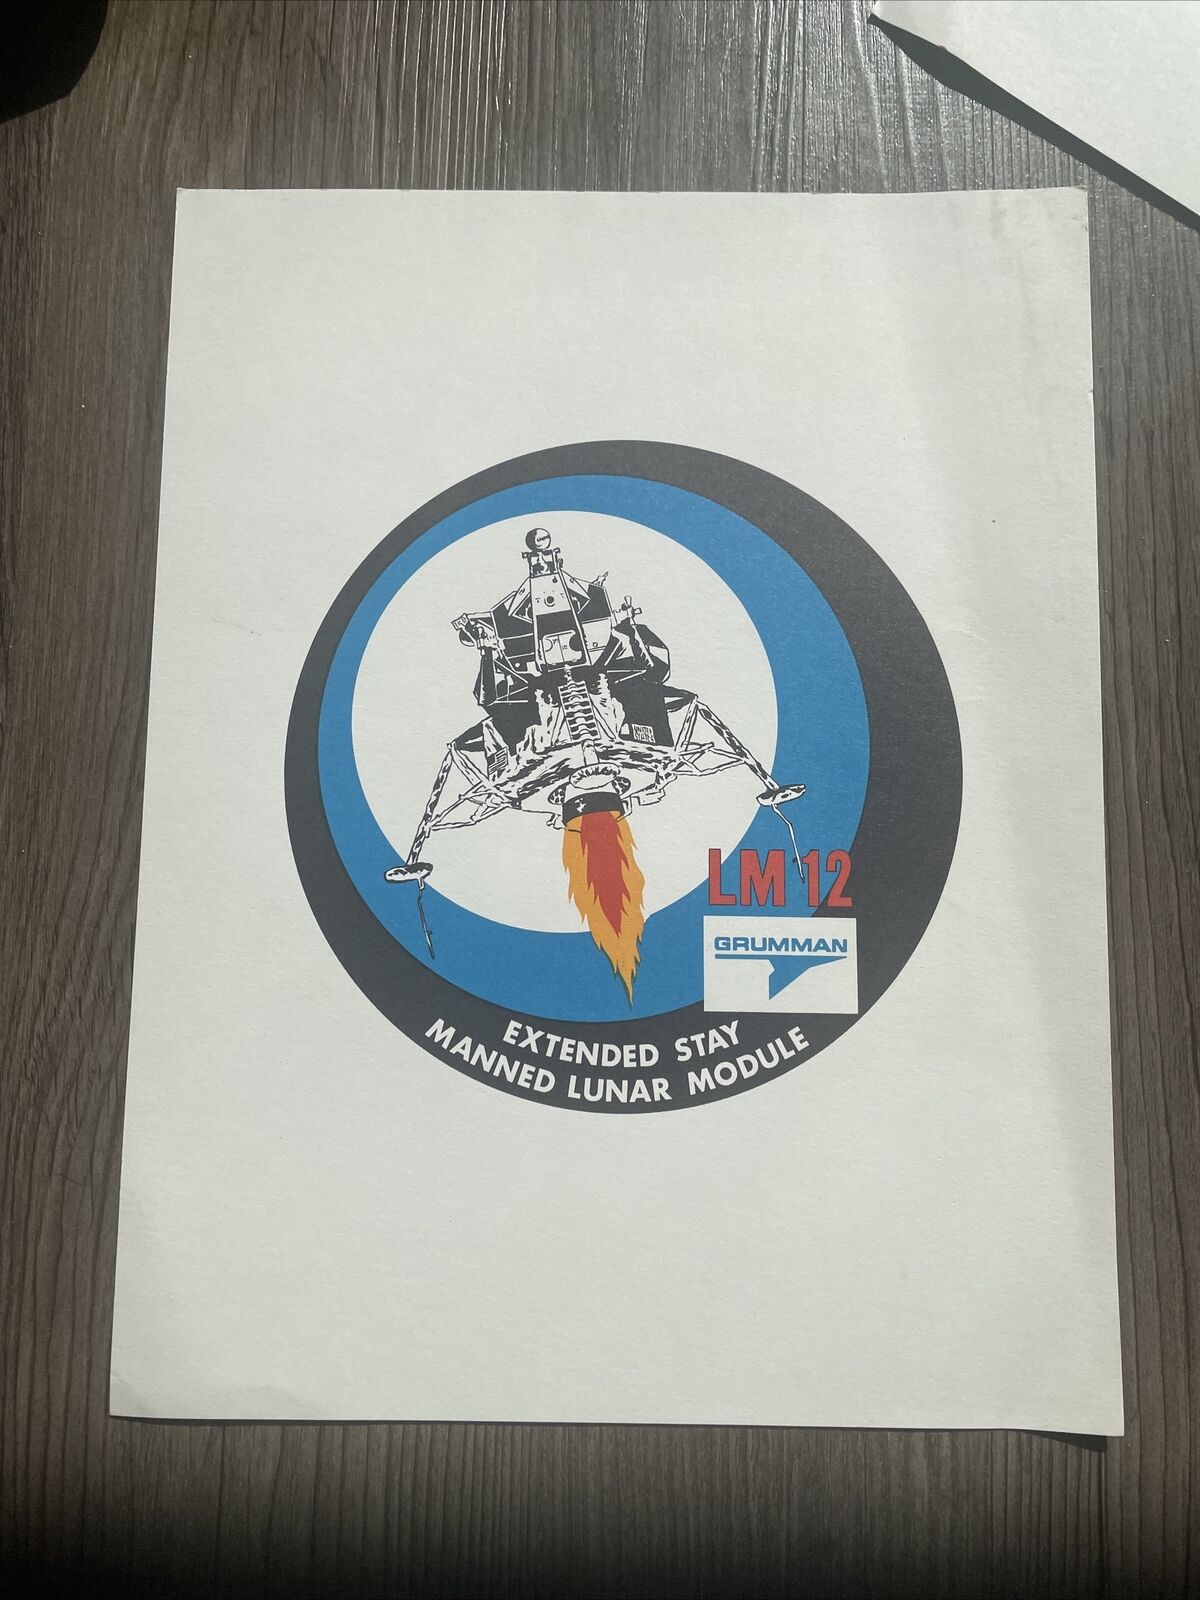 Nasa Extended Mission Lunar Spacecraft Print, Grumman, 1960s